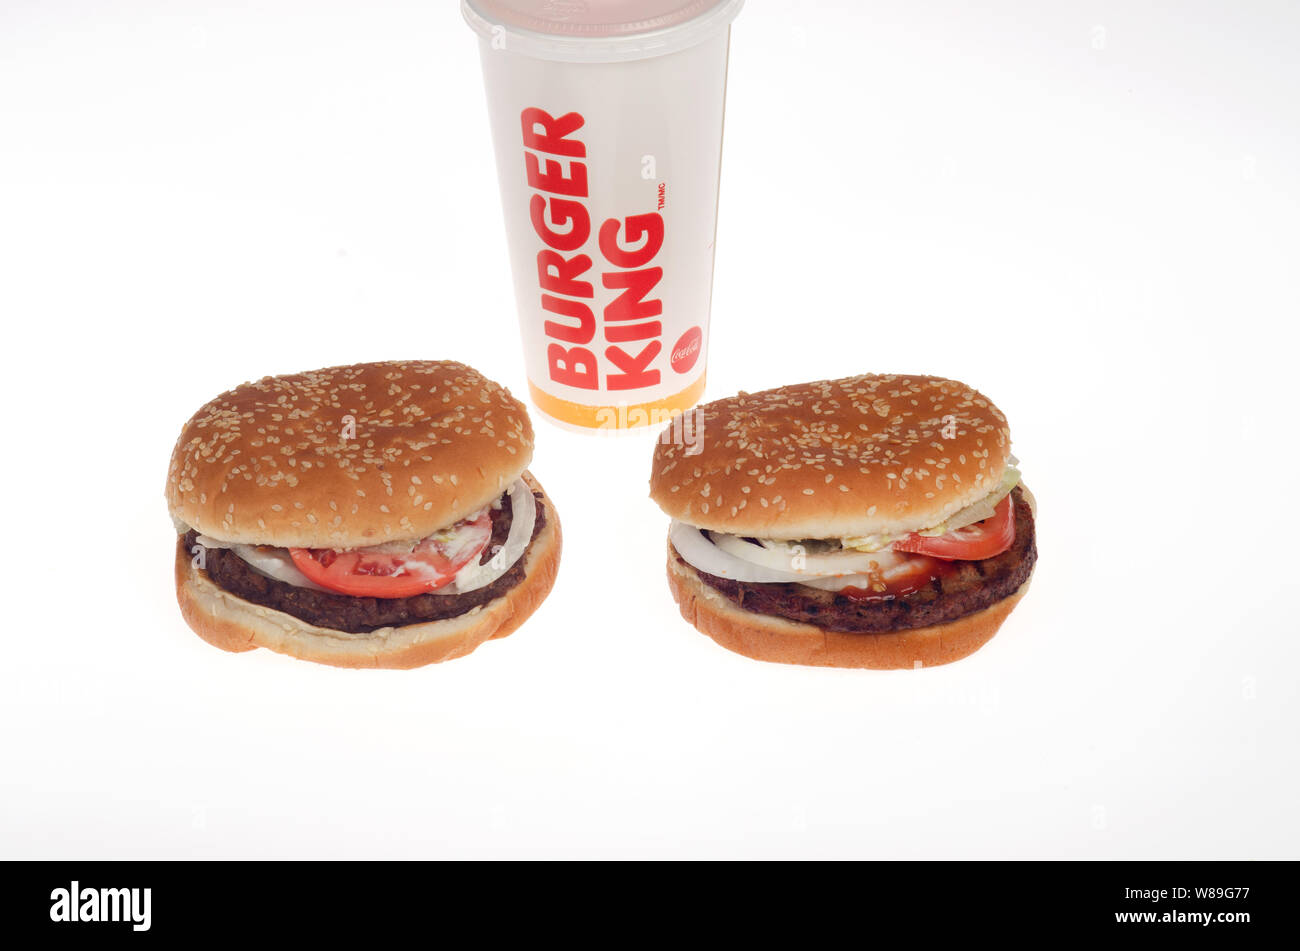 Burger King Whopper Carni bovine sulla sinistra e vegetariana impossibile Whopper sulla destra con soda cup Foto Stock